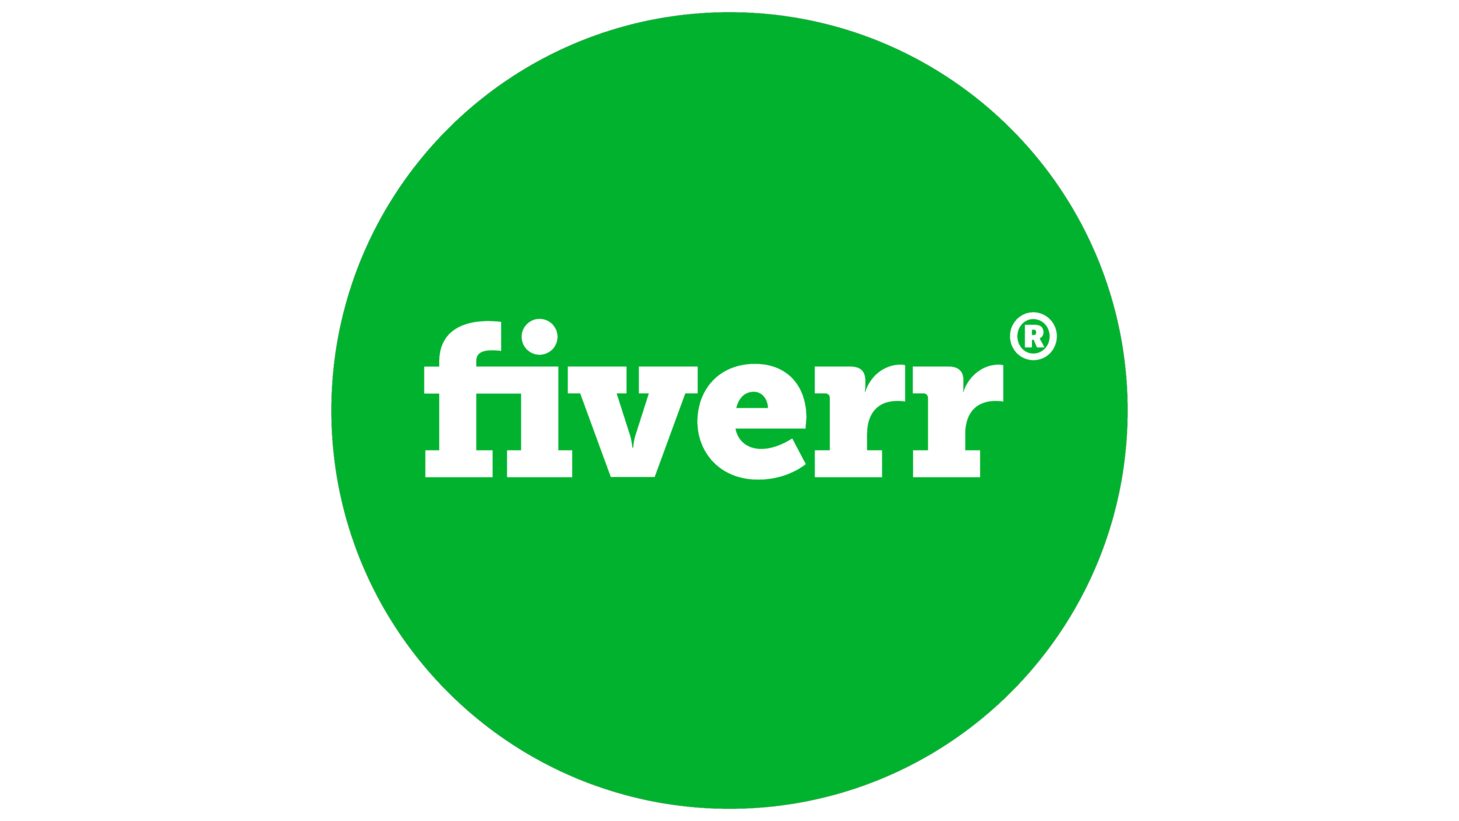 Fiverr symbol